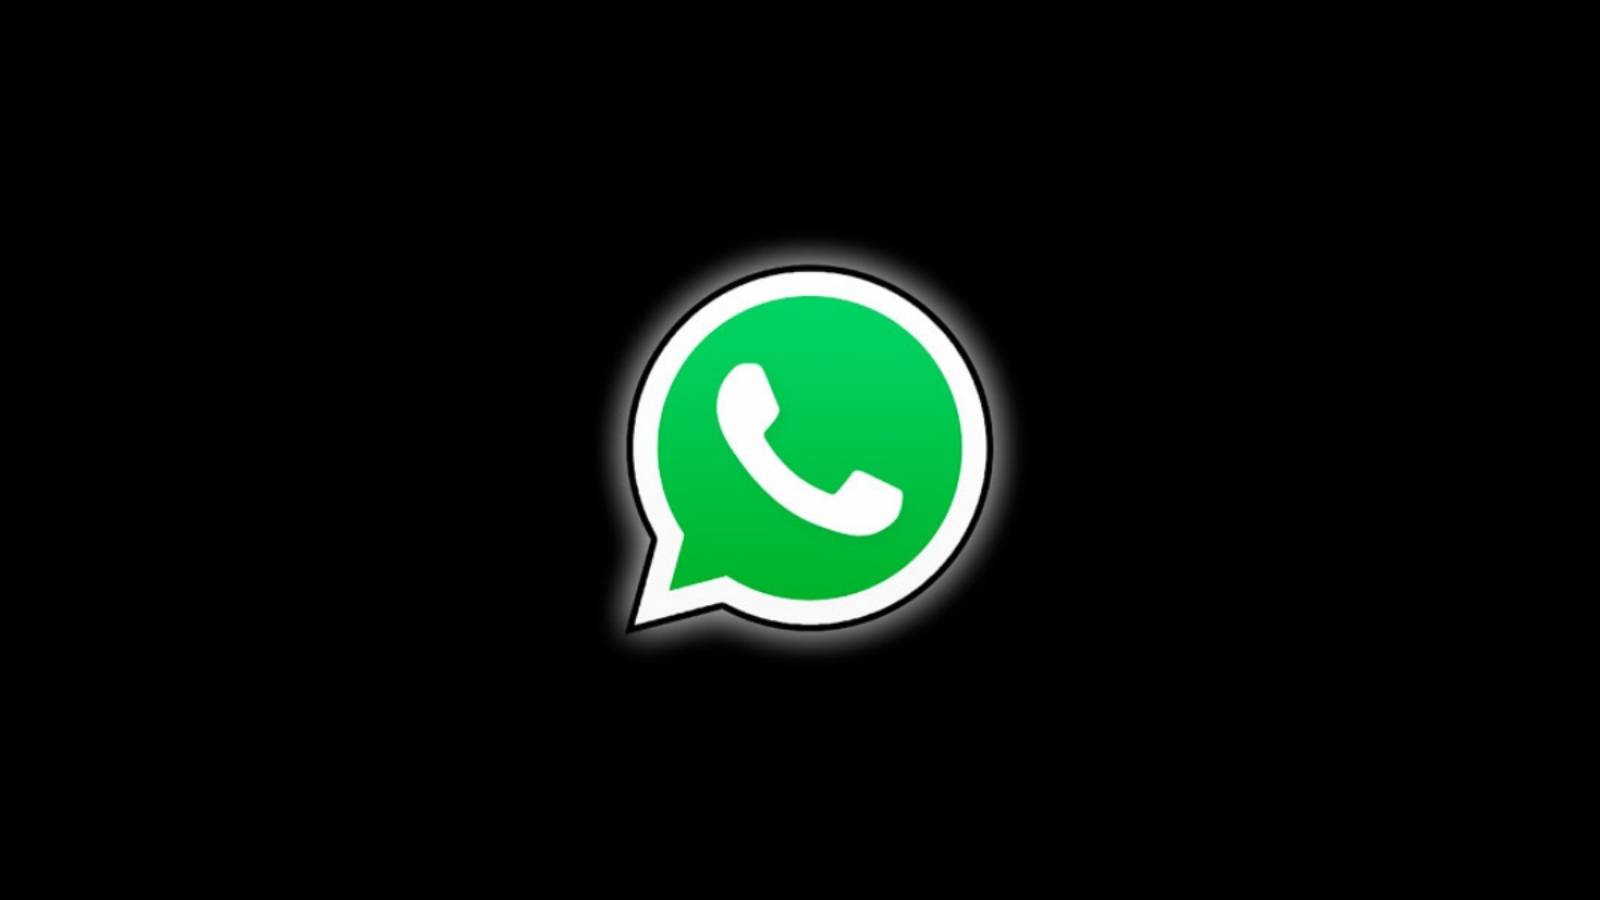 WhatsApp neue Telefonfunktionen